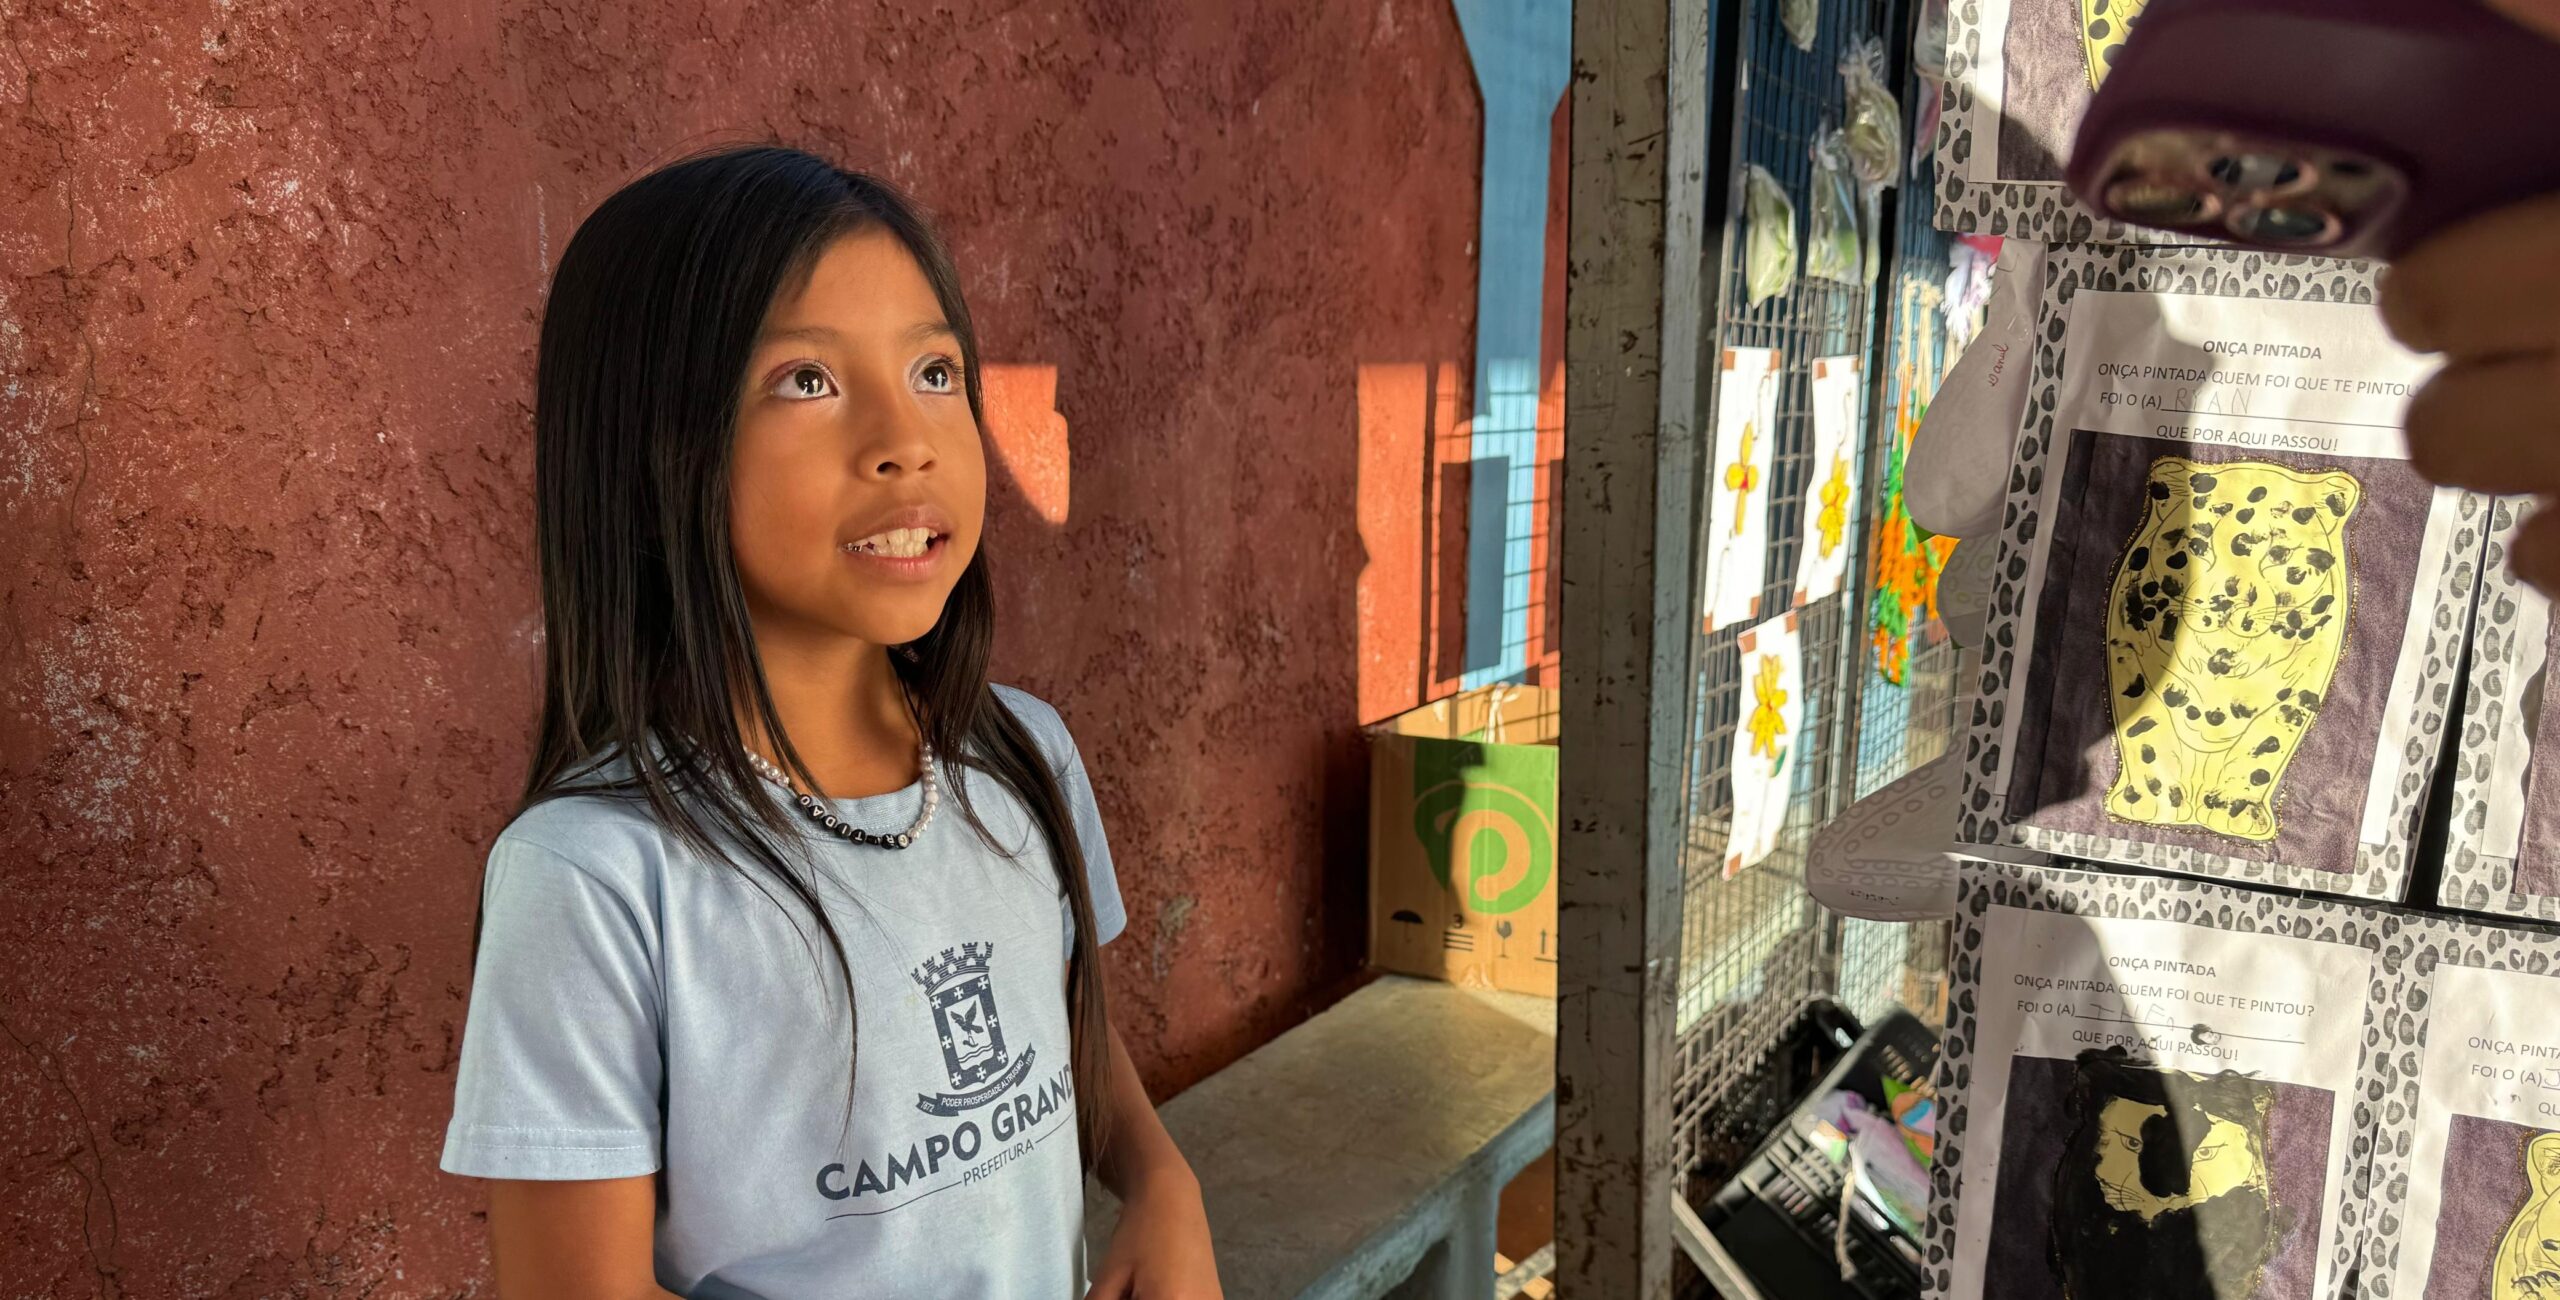 Ana Beatriz scaled No mês de comemoração aos Povos Originários, escola mostra que não deixa cultura terena morrer